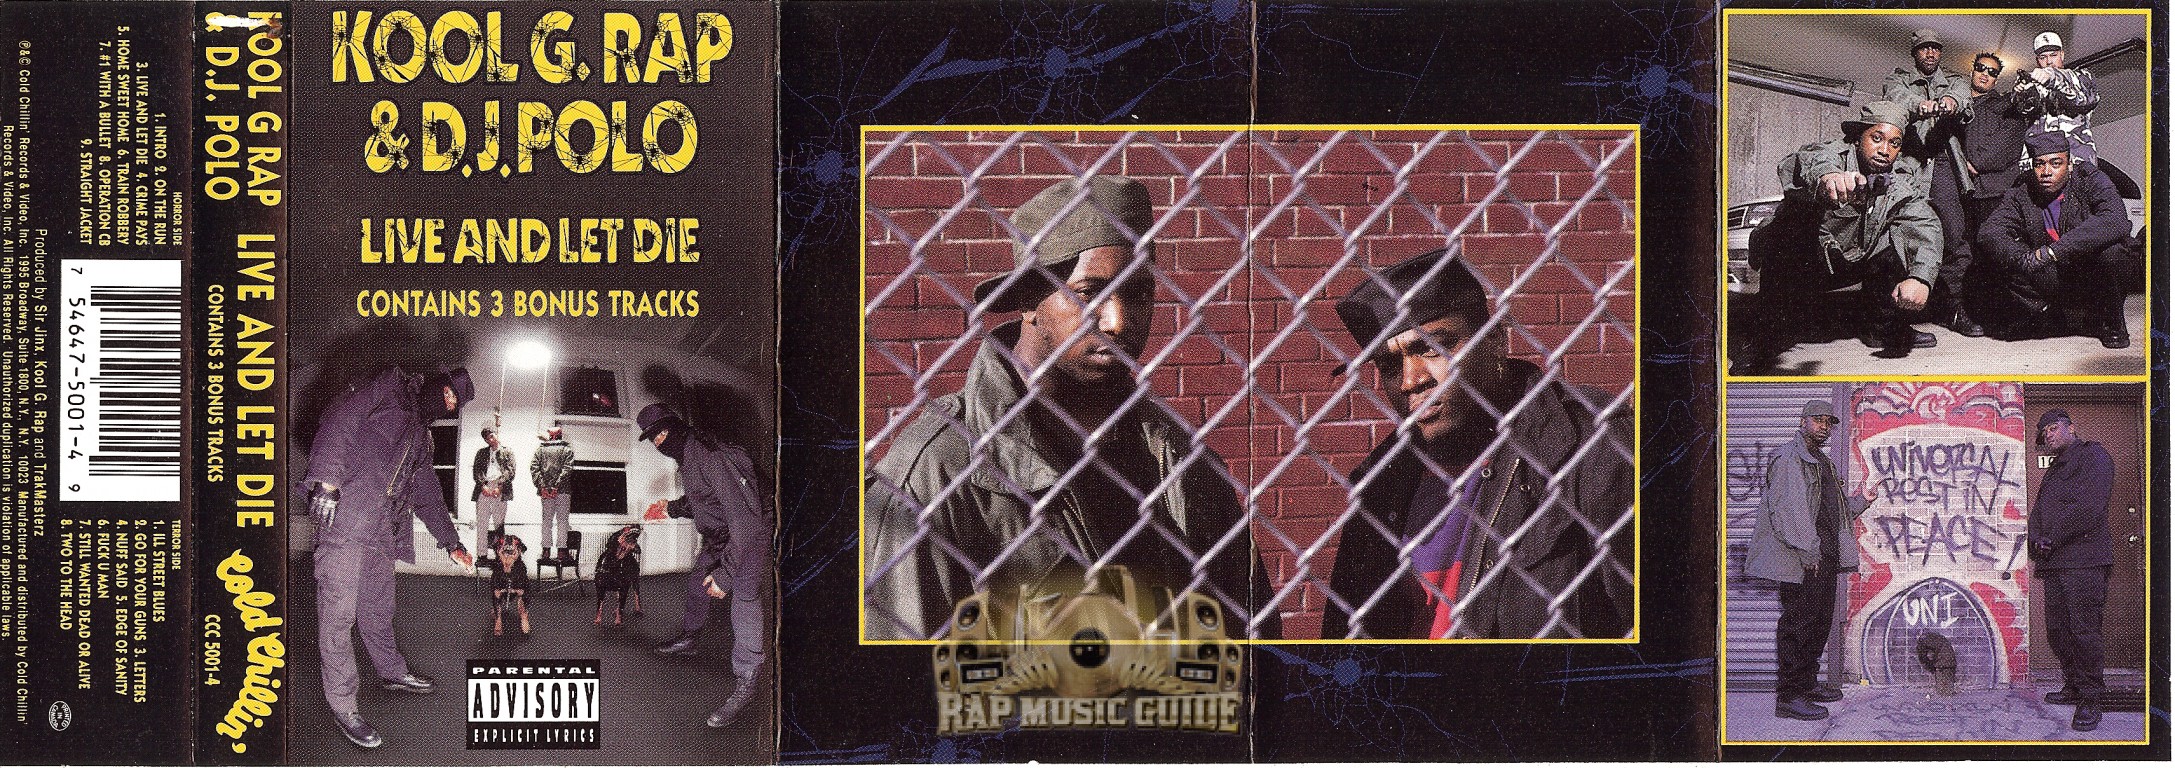 Kool G. Rap & D.J. Polo - Live And Let Die: Cassette Tape | Rap 